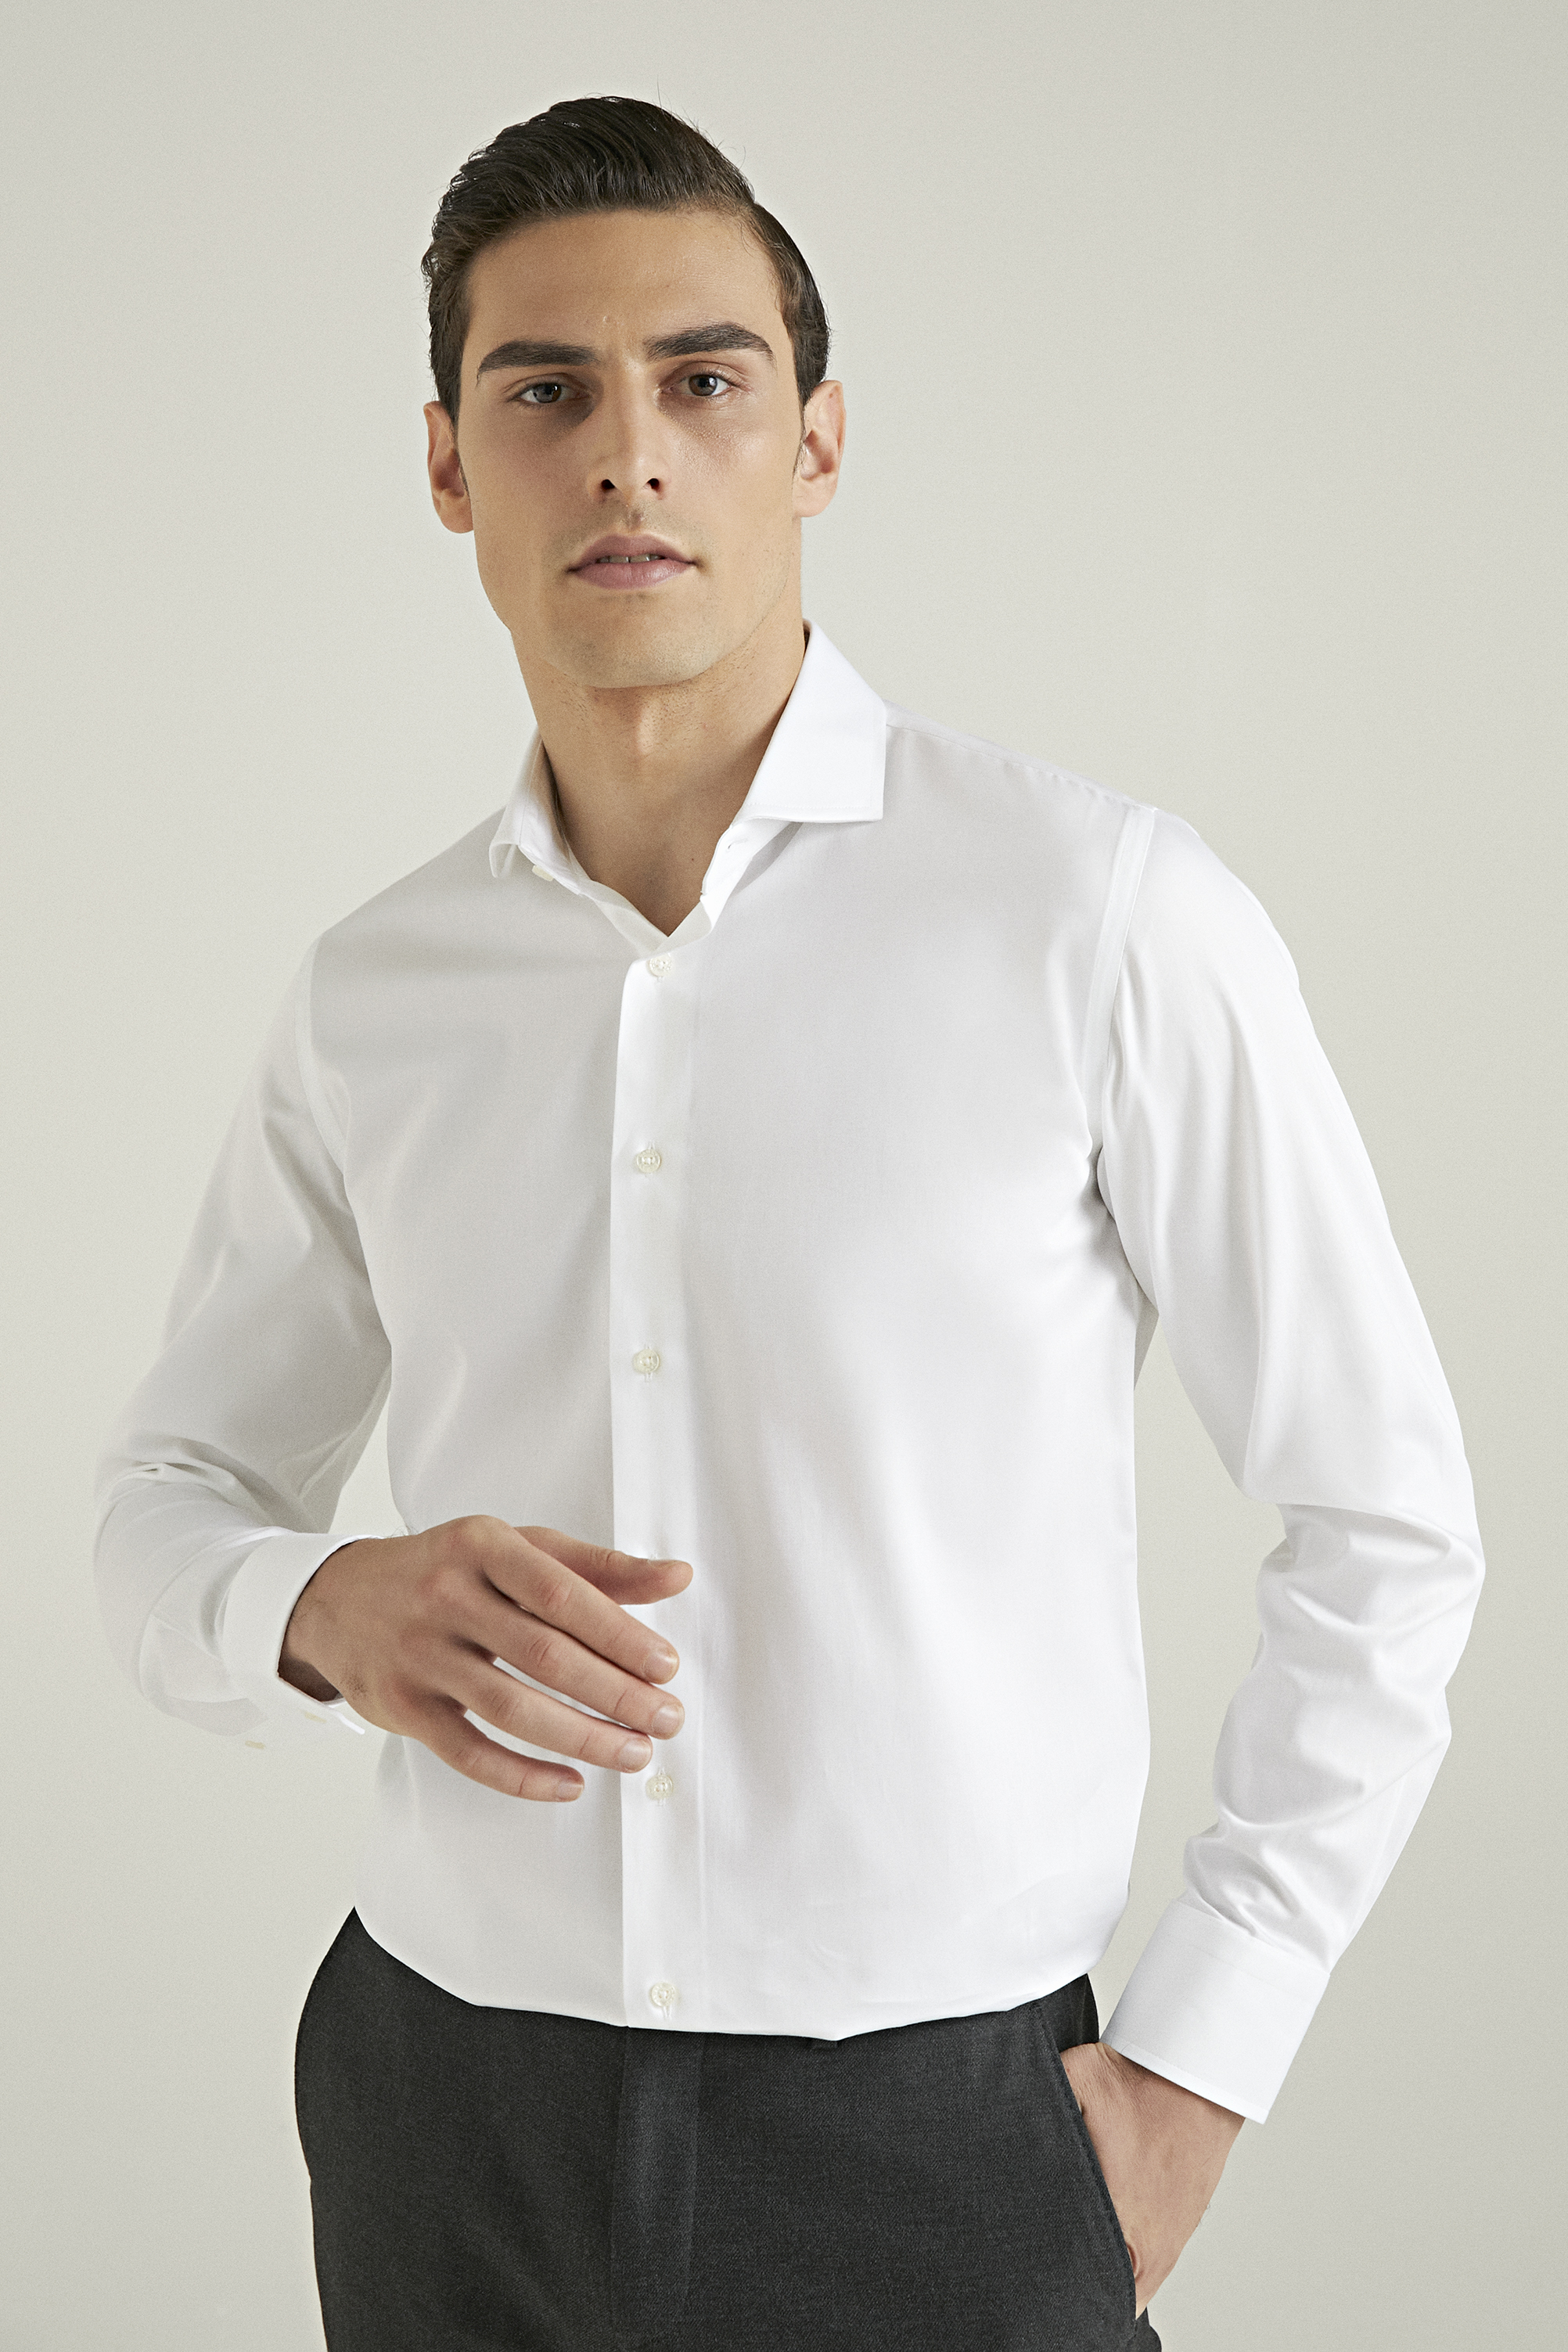 Damat Tween Damat Slim Fit Beyaz Düz Nano Care Gömlek. 1